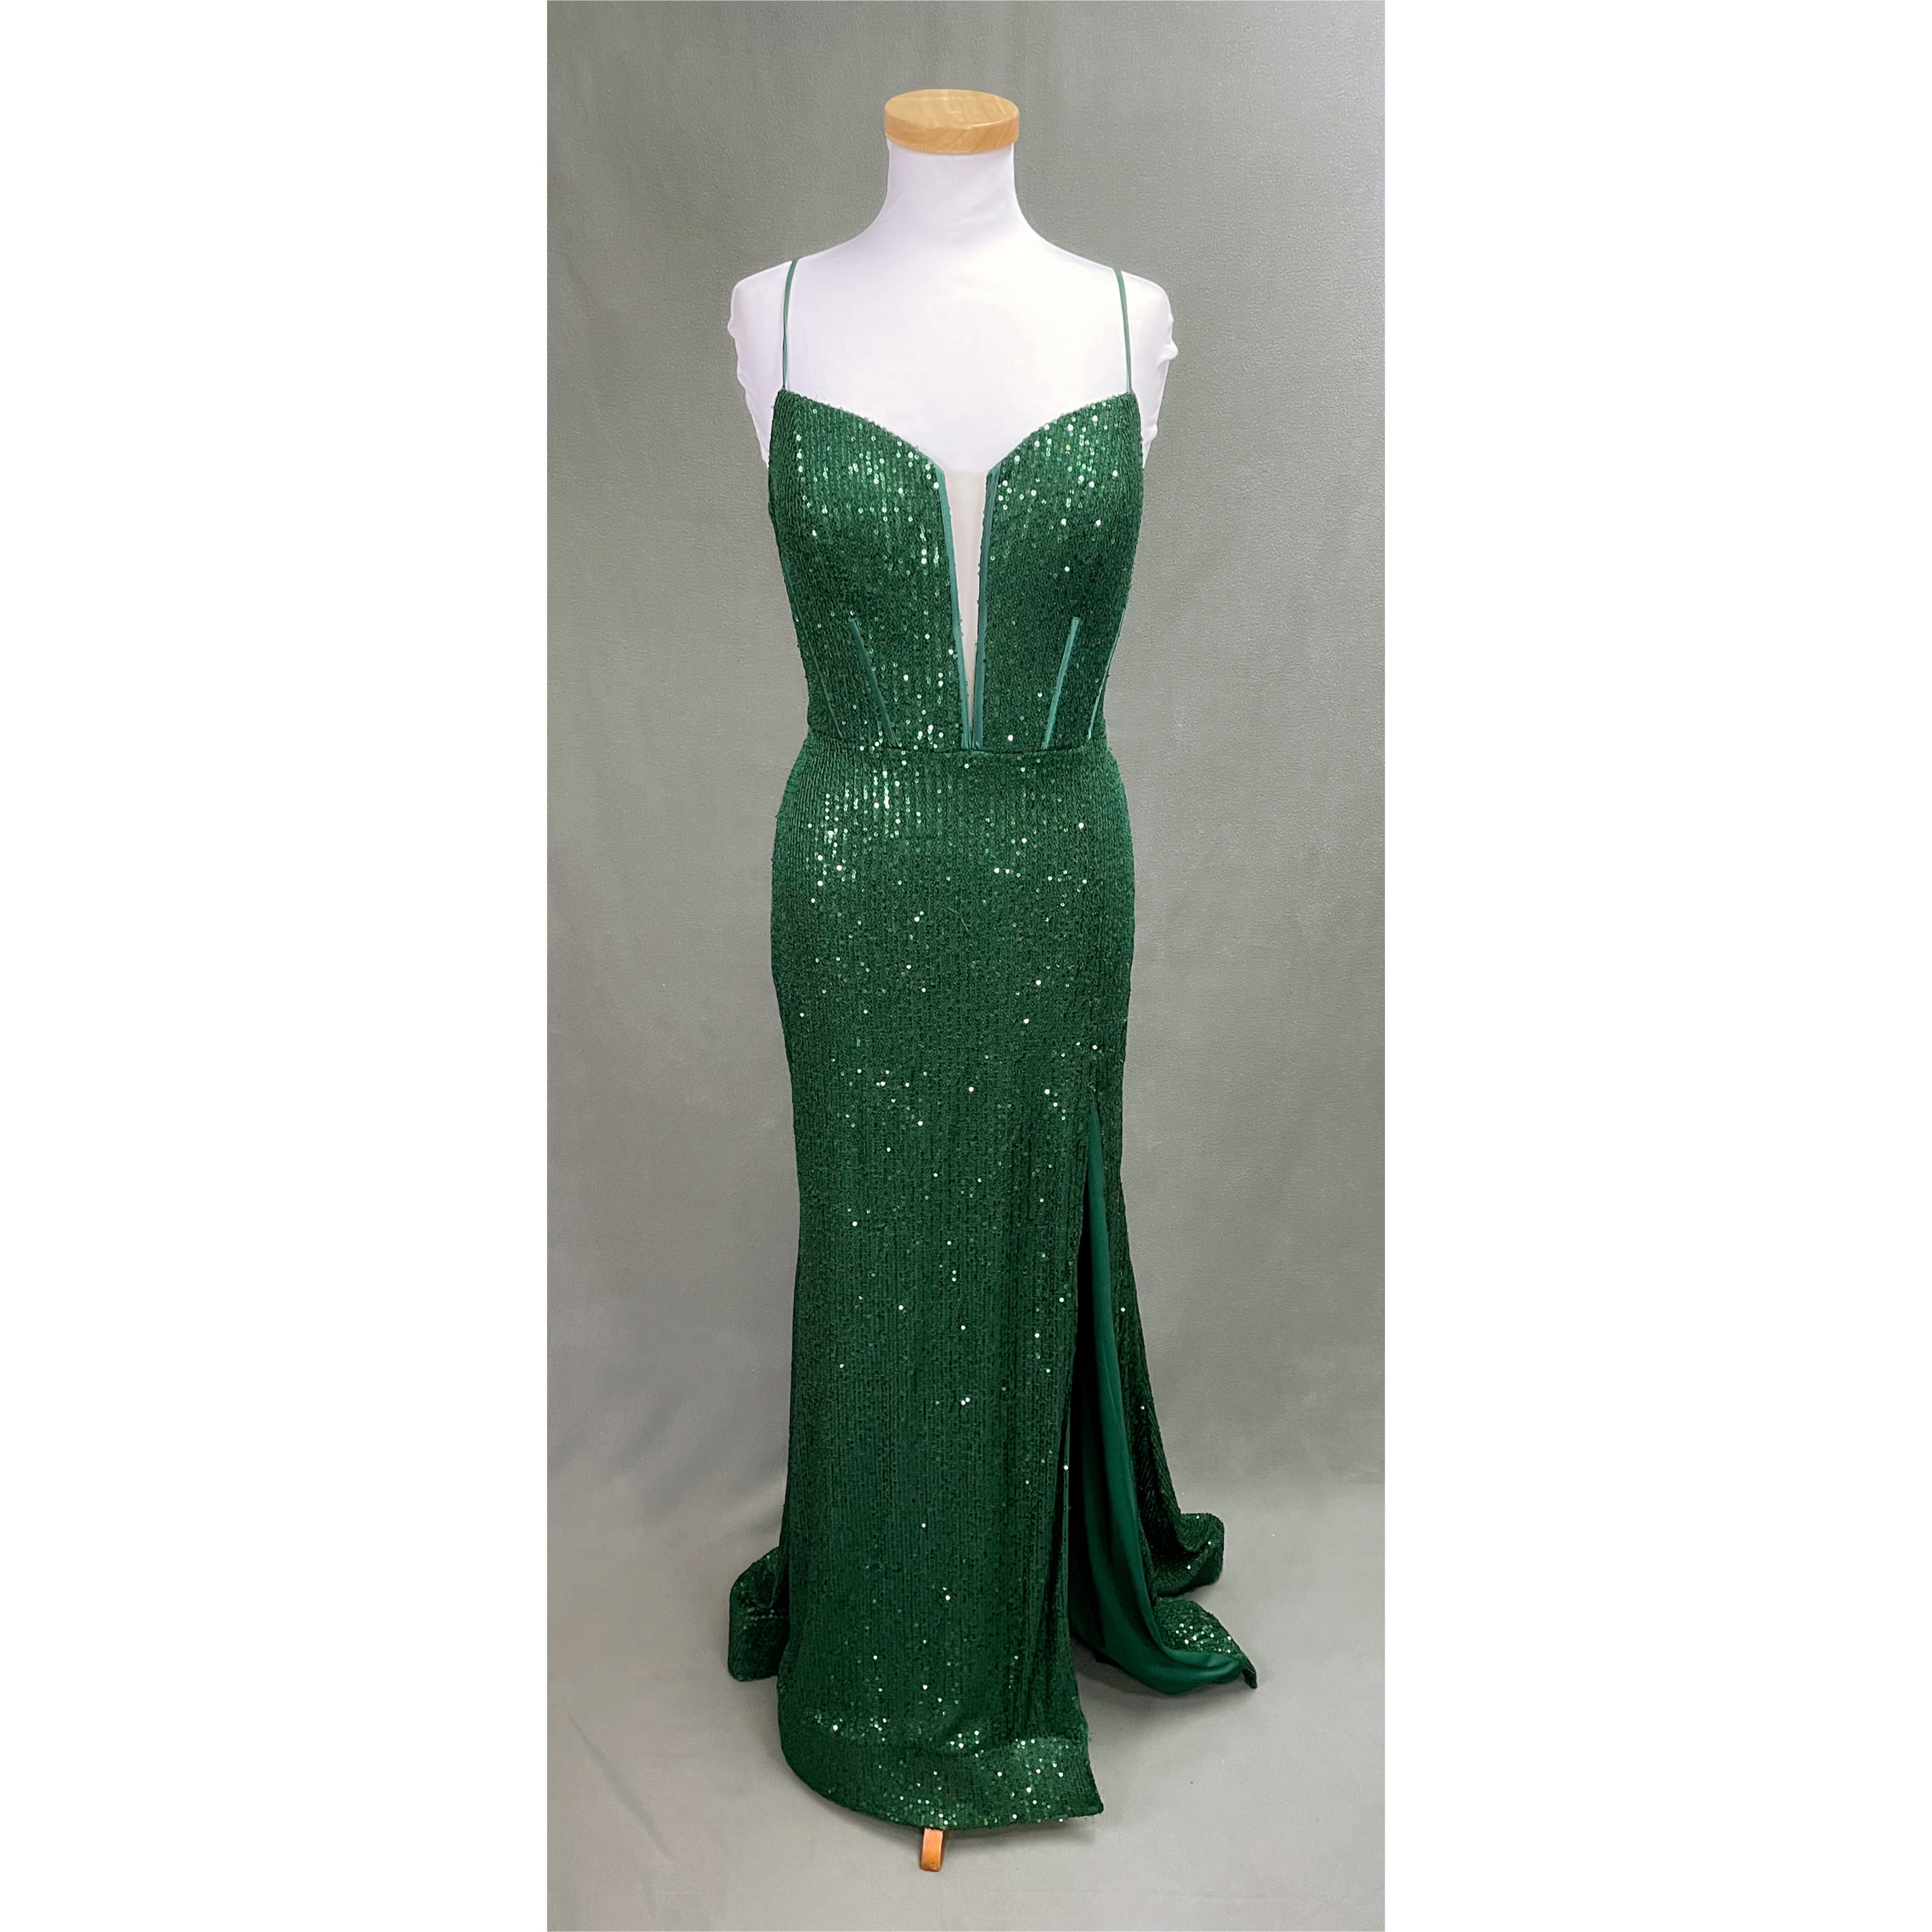 Amarra emerald dress, size 14